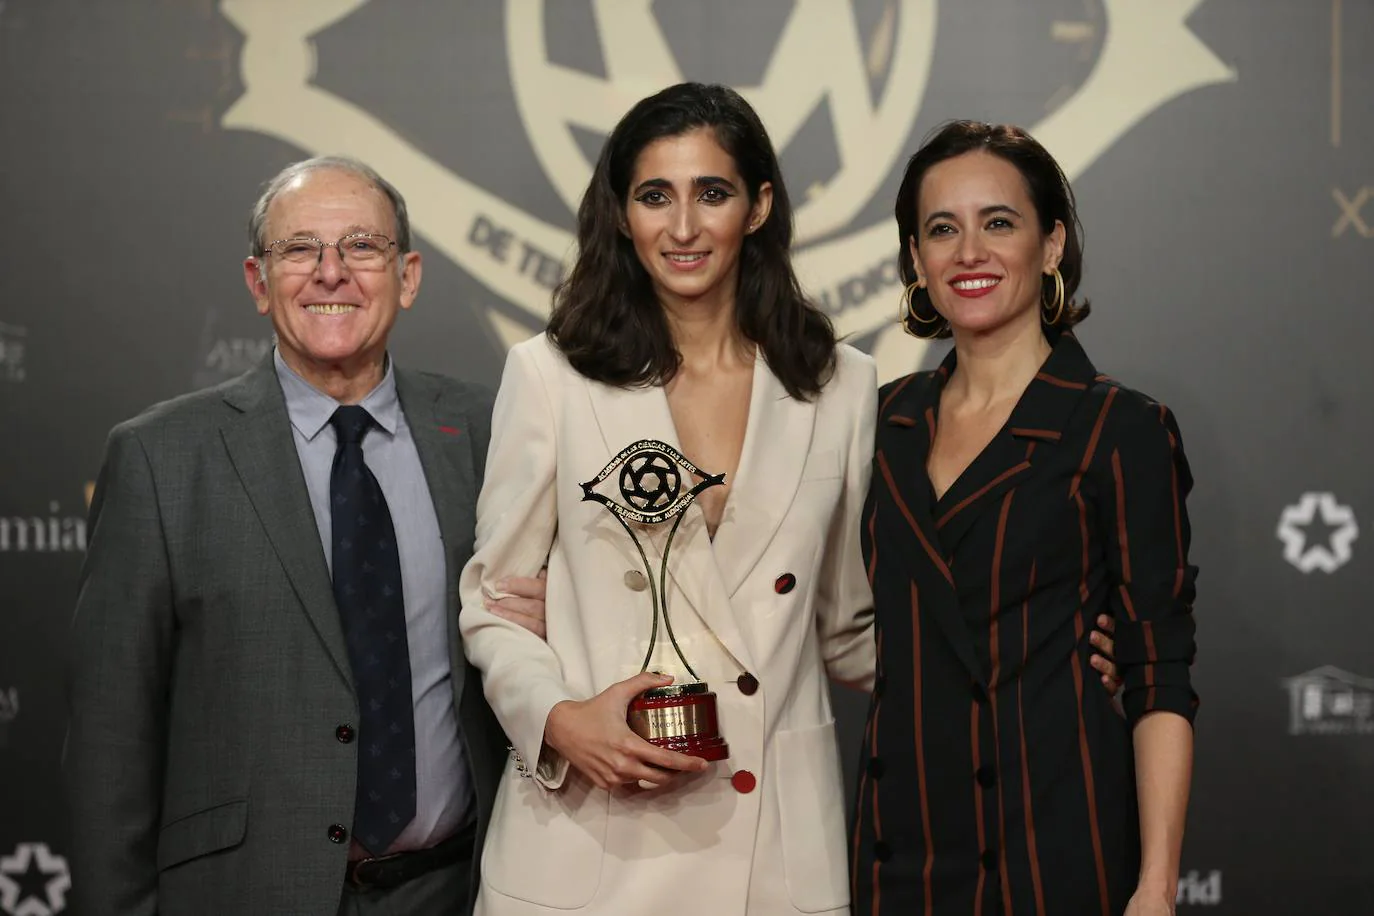 Premios Iris 2019: las mejores fotos de la gala